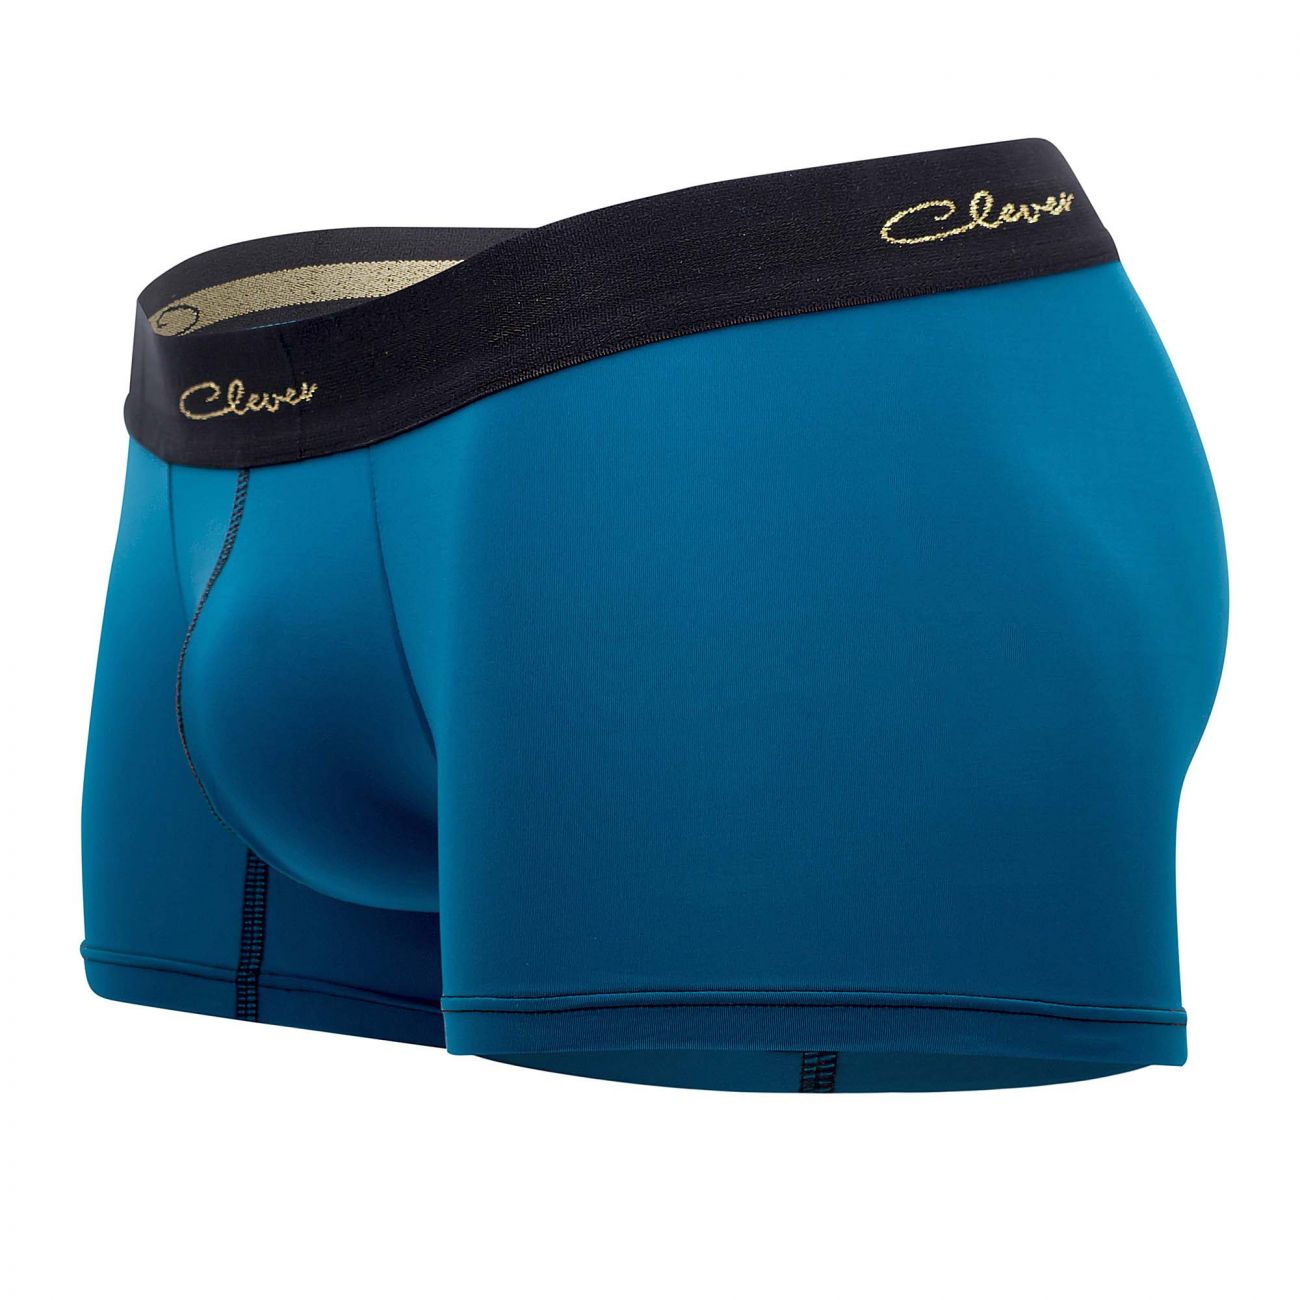 Underwear: Clever 2434 Respect Boxer Briefs | eBay